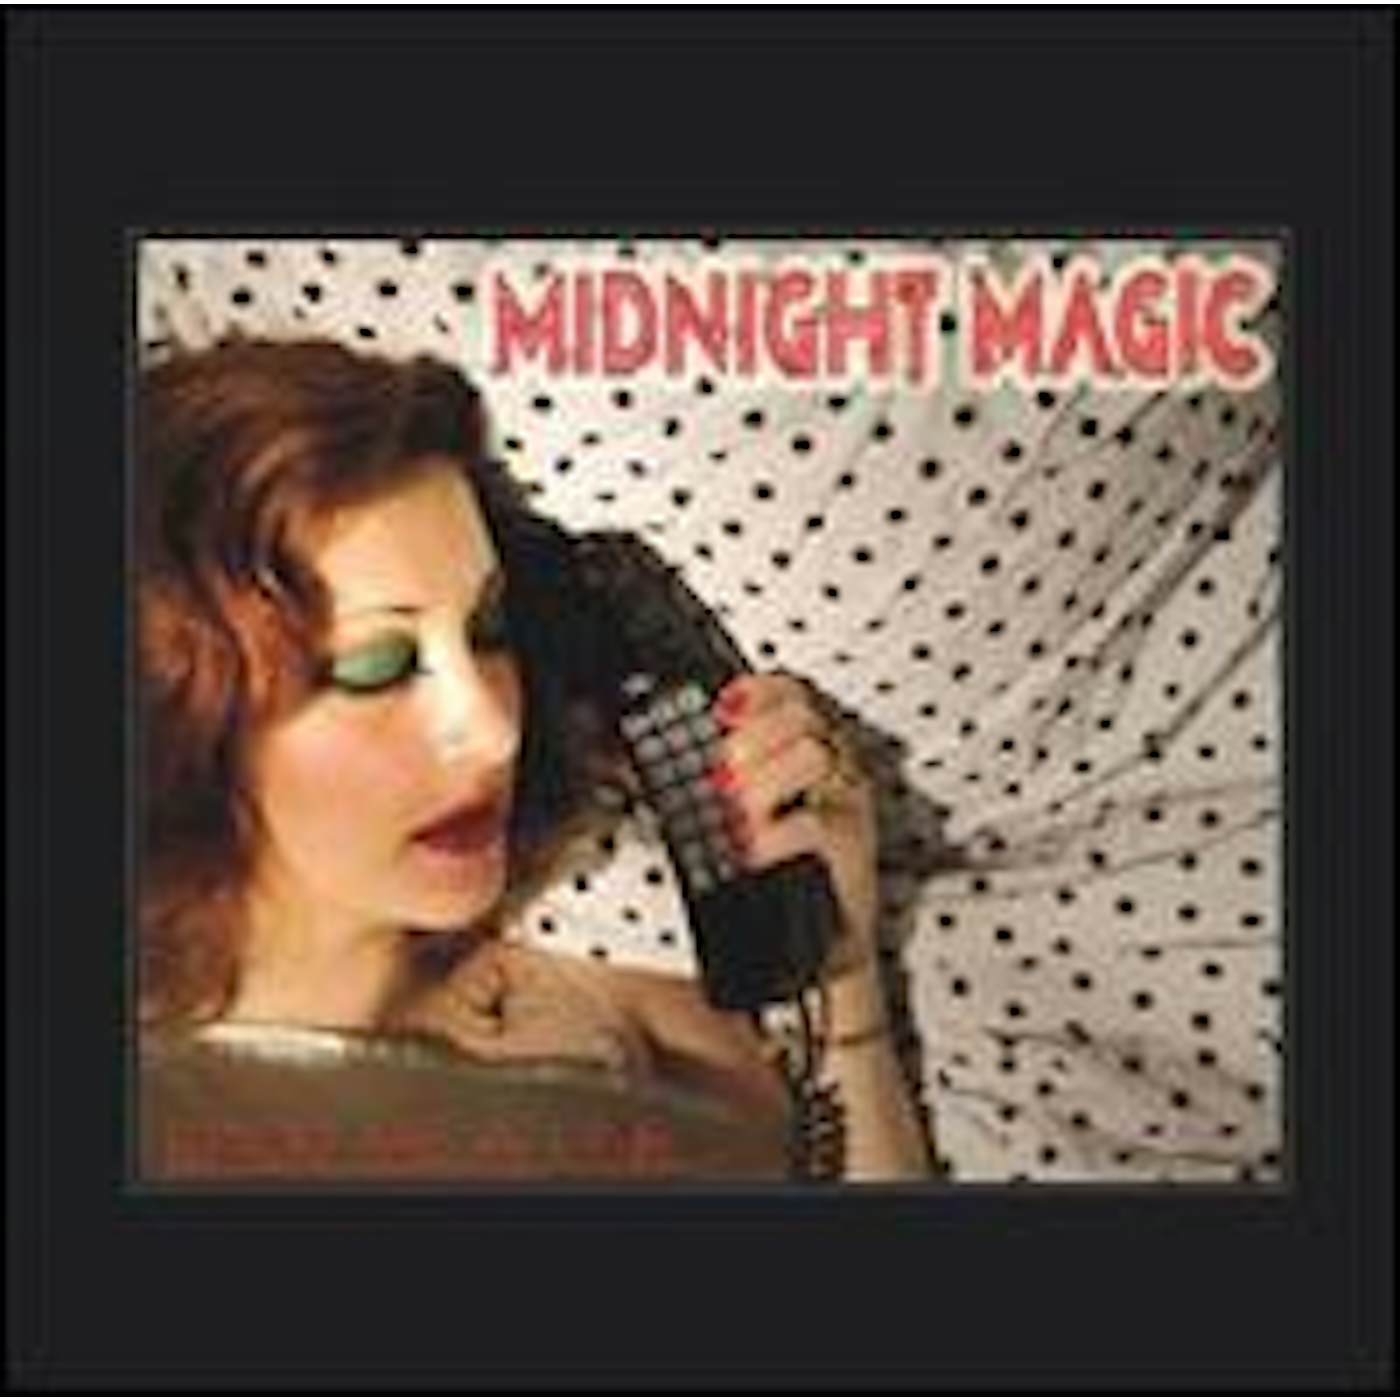 Midnight Magic Drop Me A Line Vinyl Record